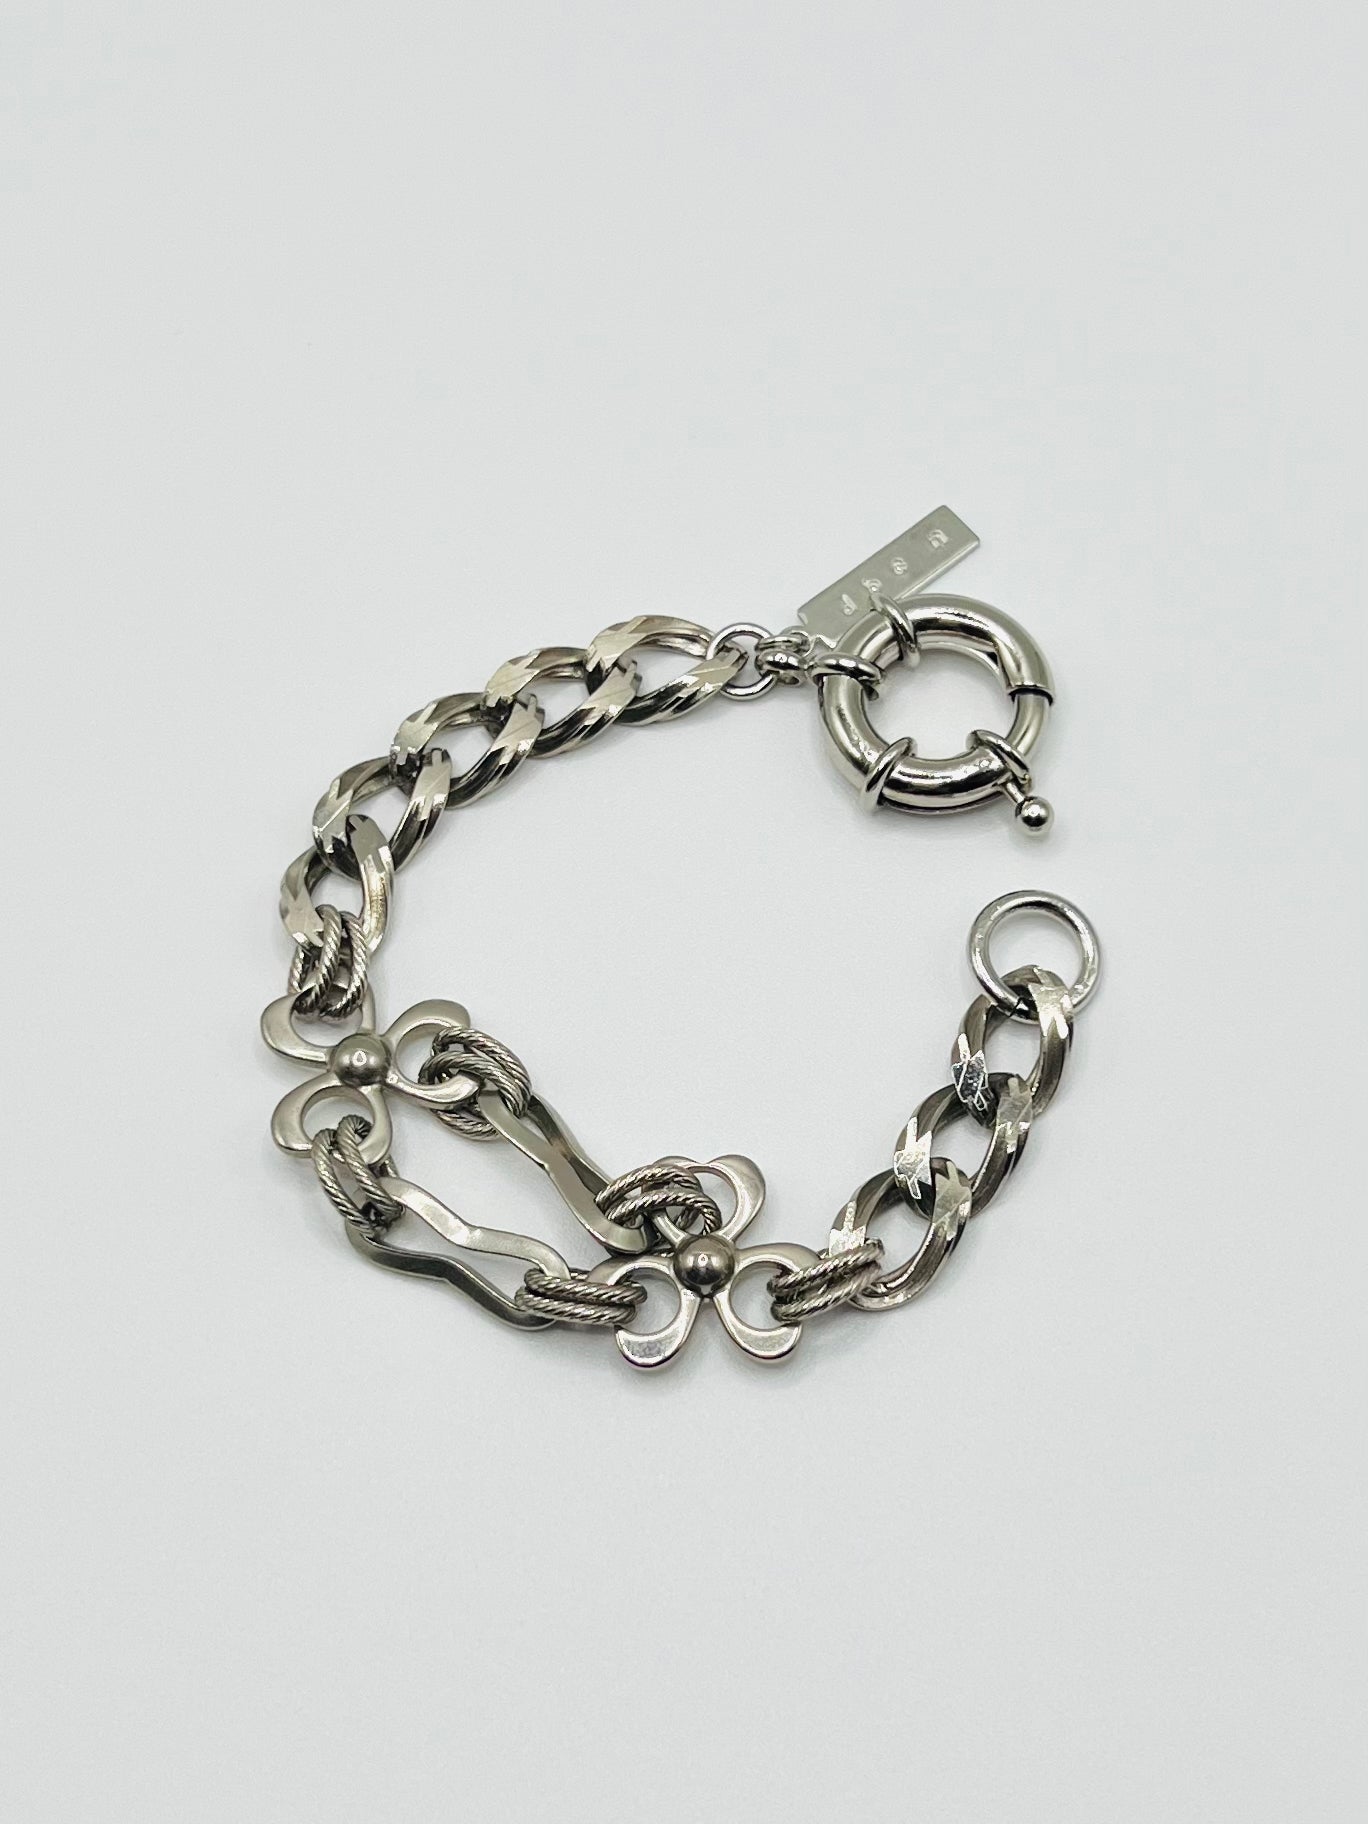 Chain combination bracelet - A